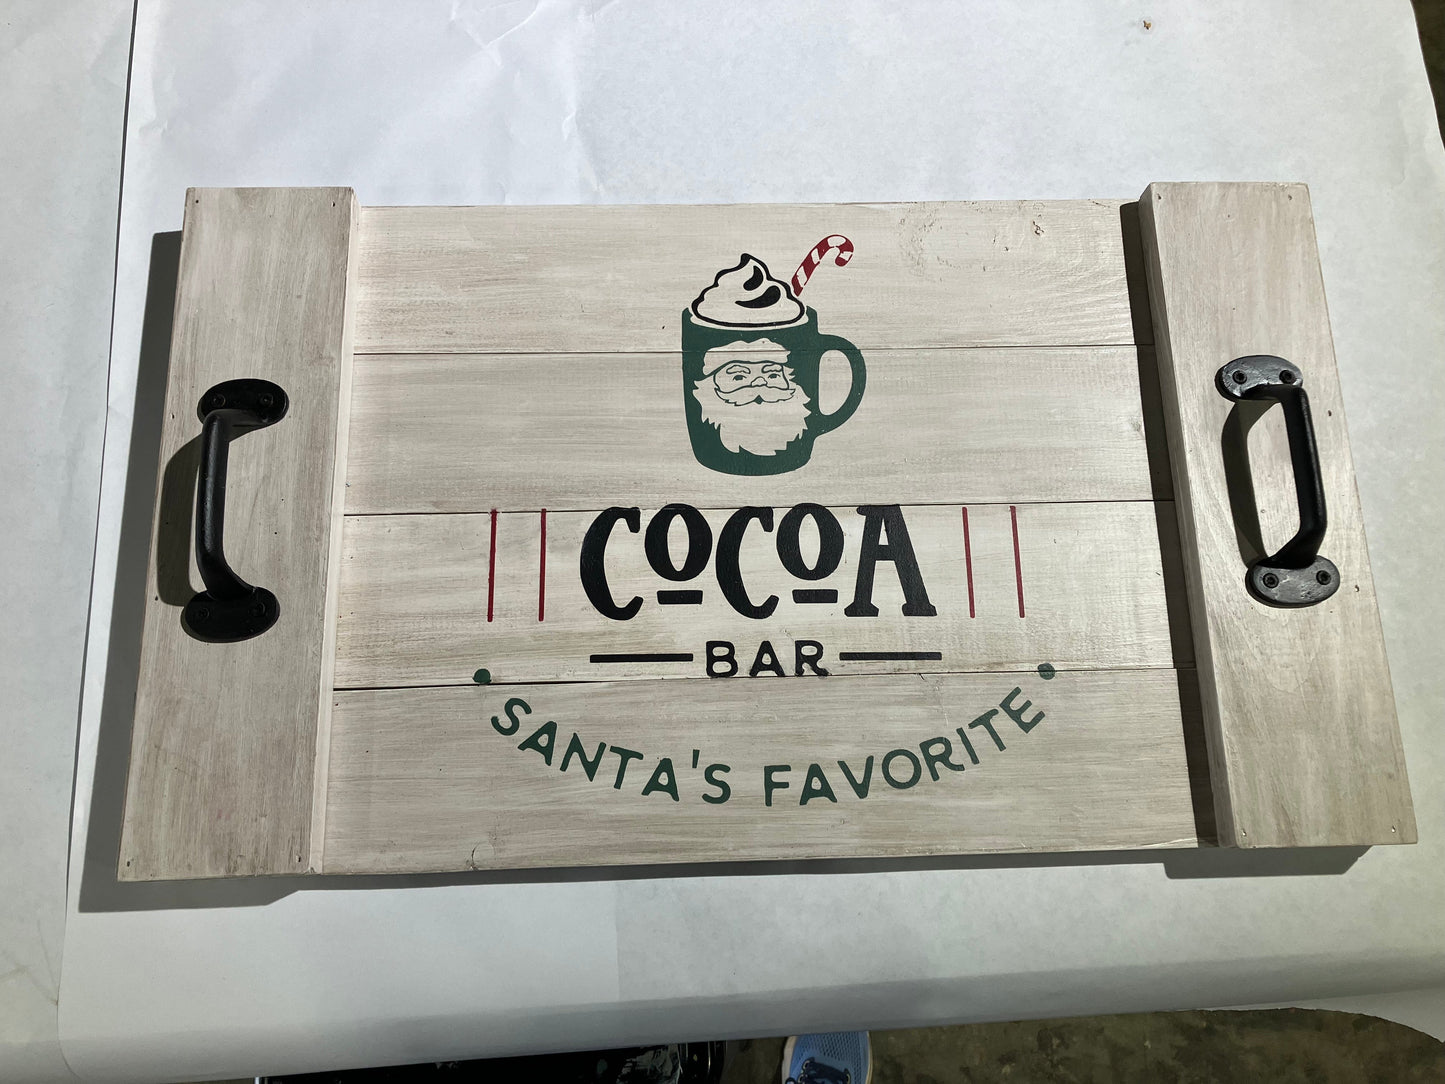 Hot Cocoa Bar Tray